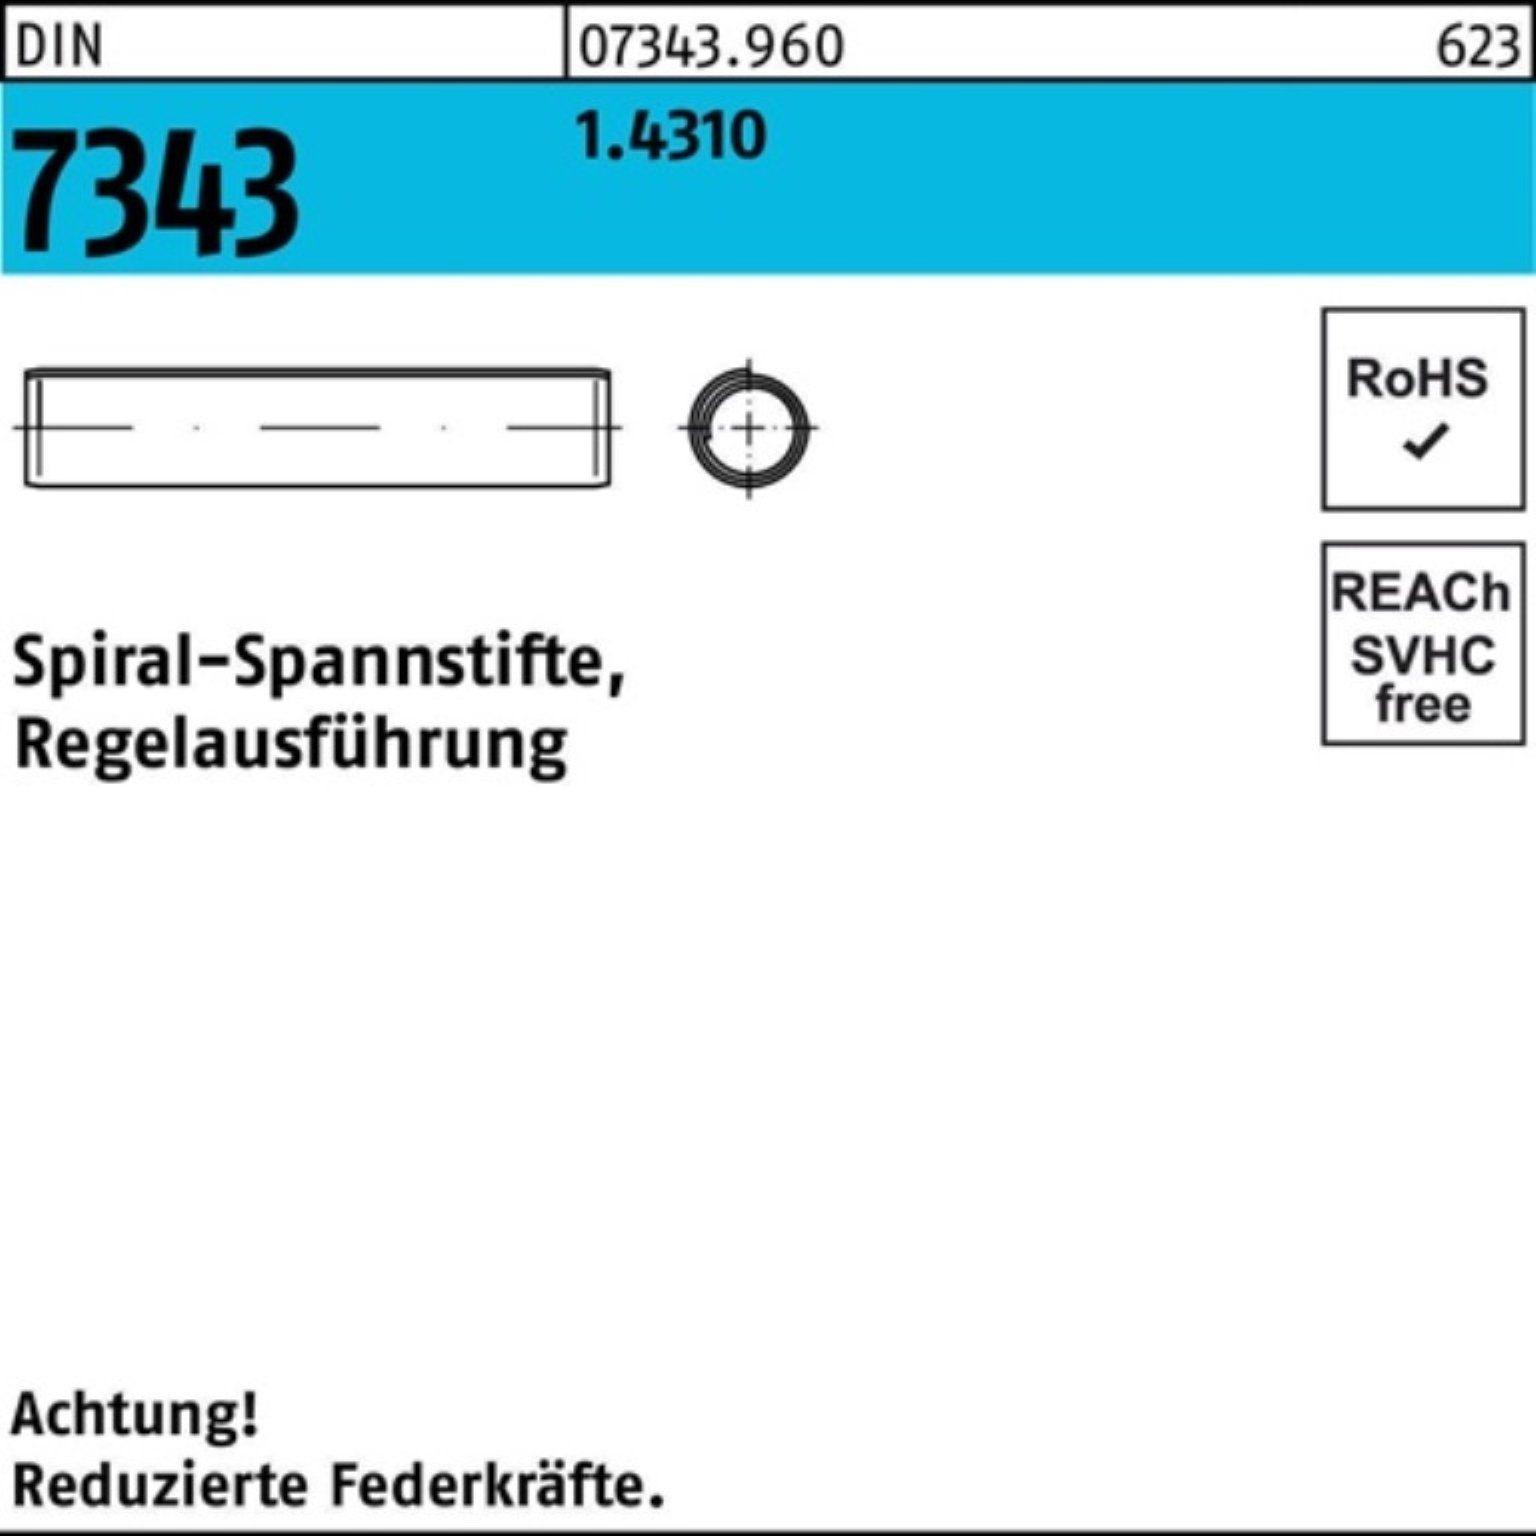 Reyher Spannstift 1000er 7343/ISO 1,5x Regelausf Spiralspannstift 8 1.4310 Pack DIN 8750